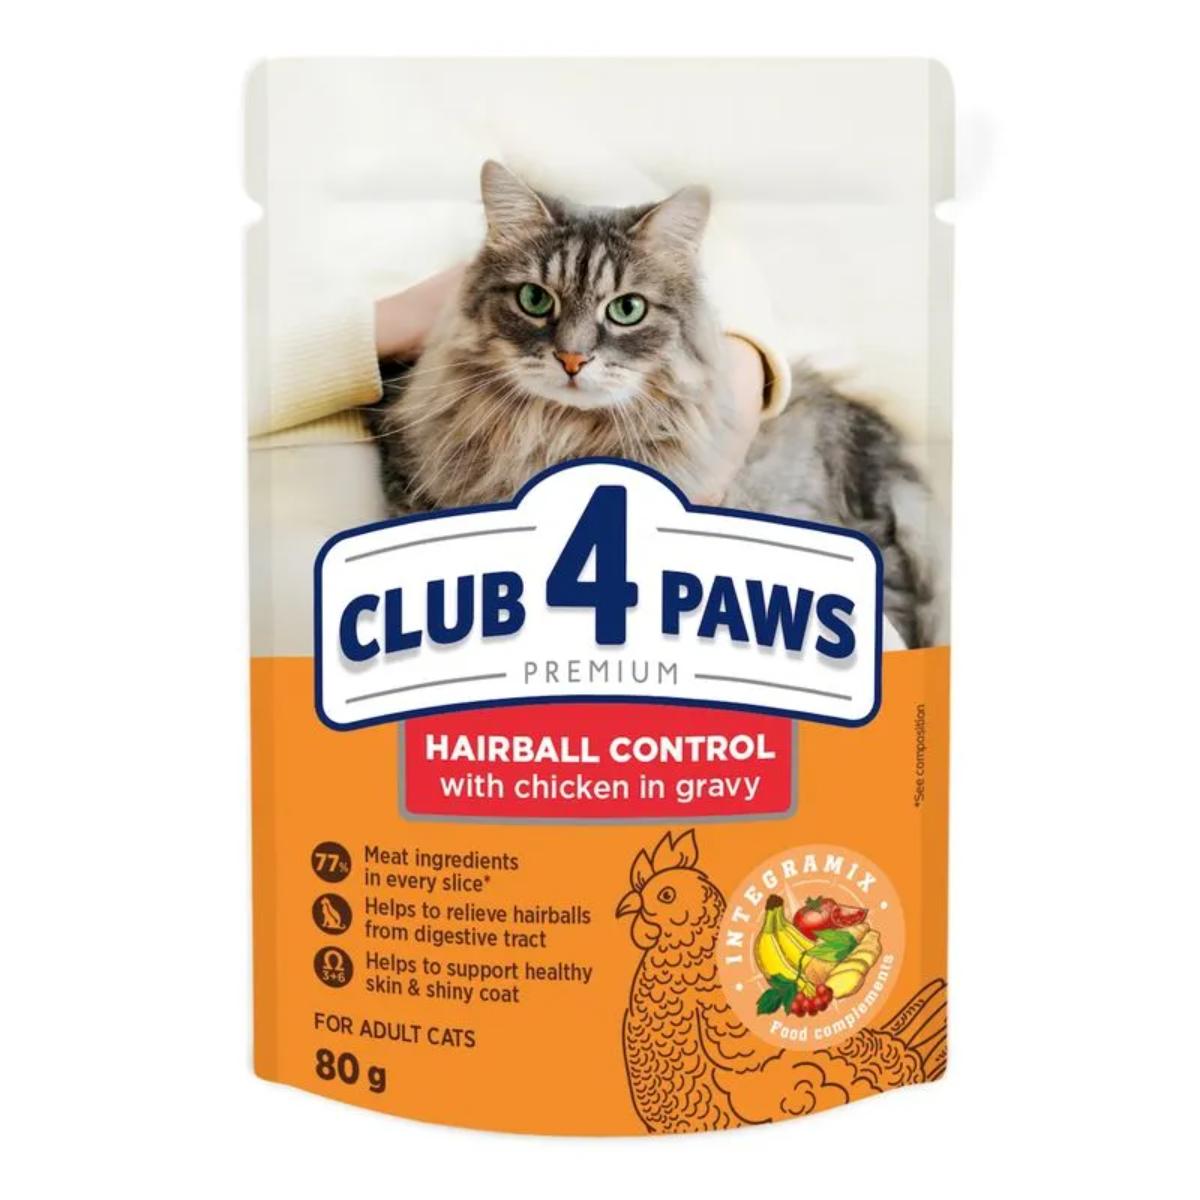 CLUB 4 PAWS Premium Hairball Control, Pui, plic hrană umedă pisici, limitarea ghemurilor de blană, (în sos), 80g CLUB 4 PAWS Premium Hairball Control, Pui, plic hrană umedă pisici, limitarea ghemurilor de blană, (în sos), bax, 80g x 24